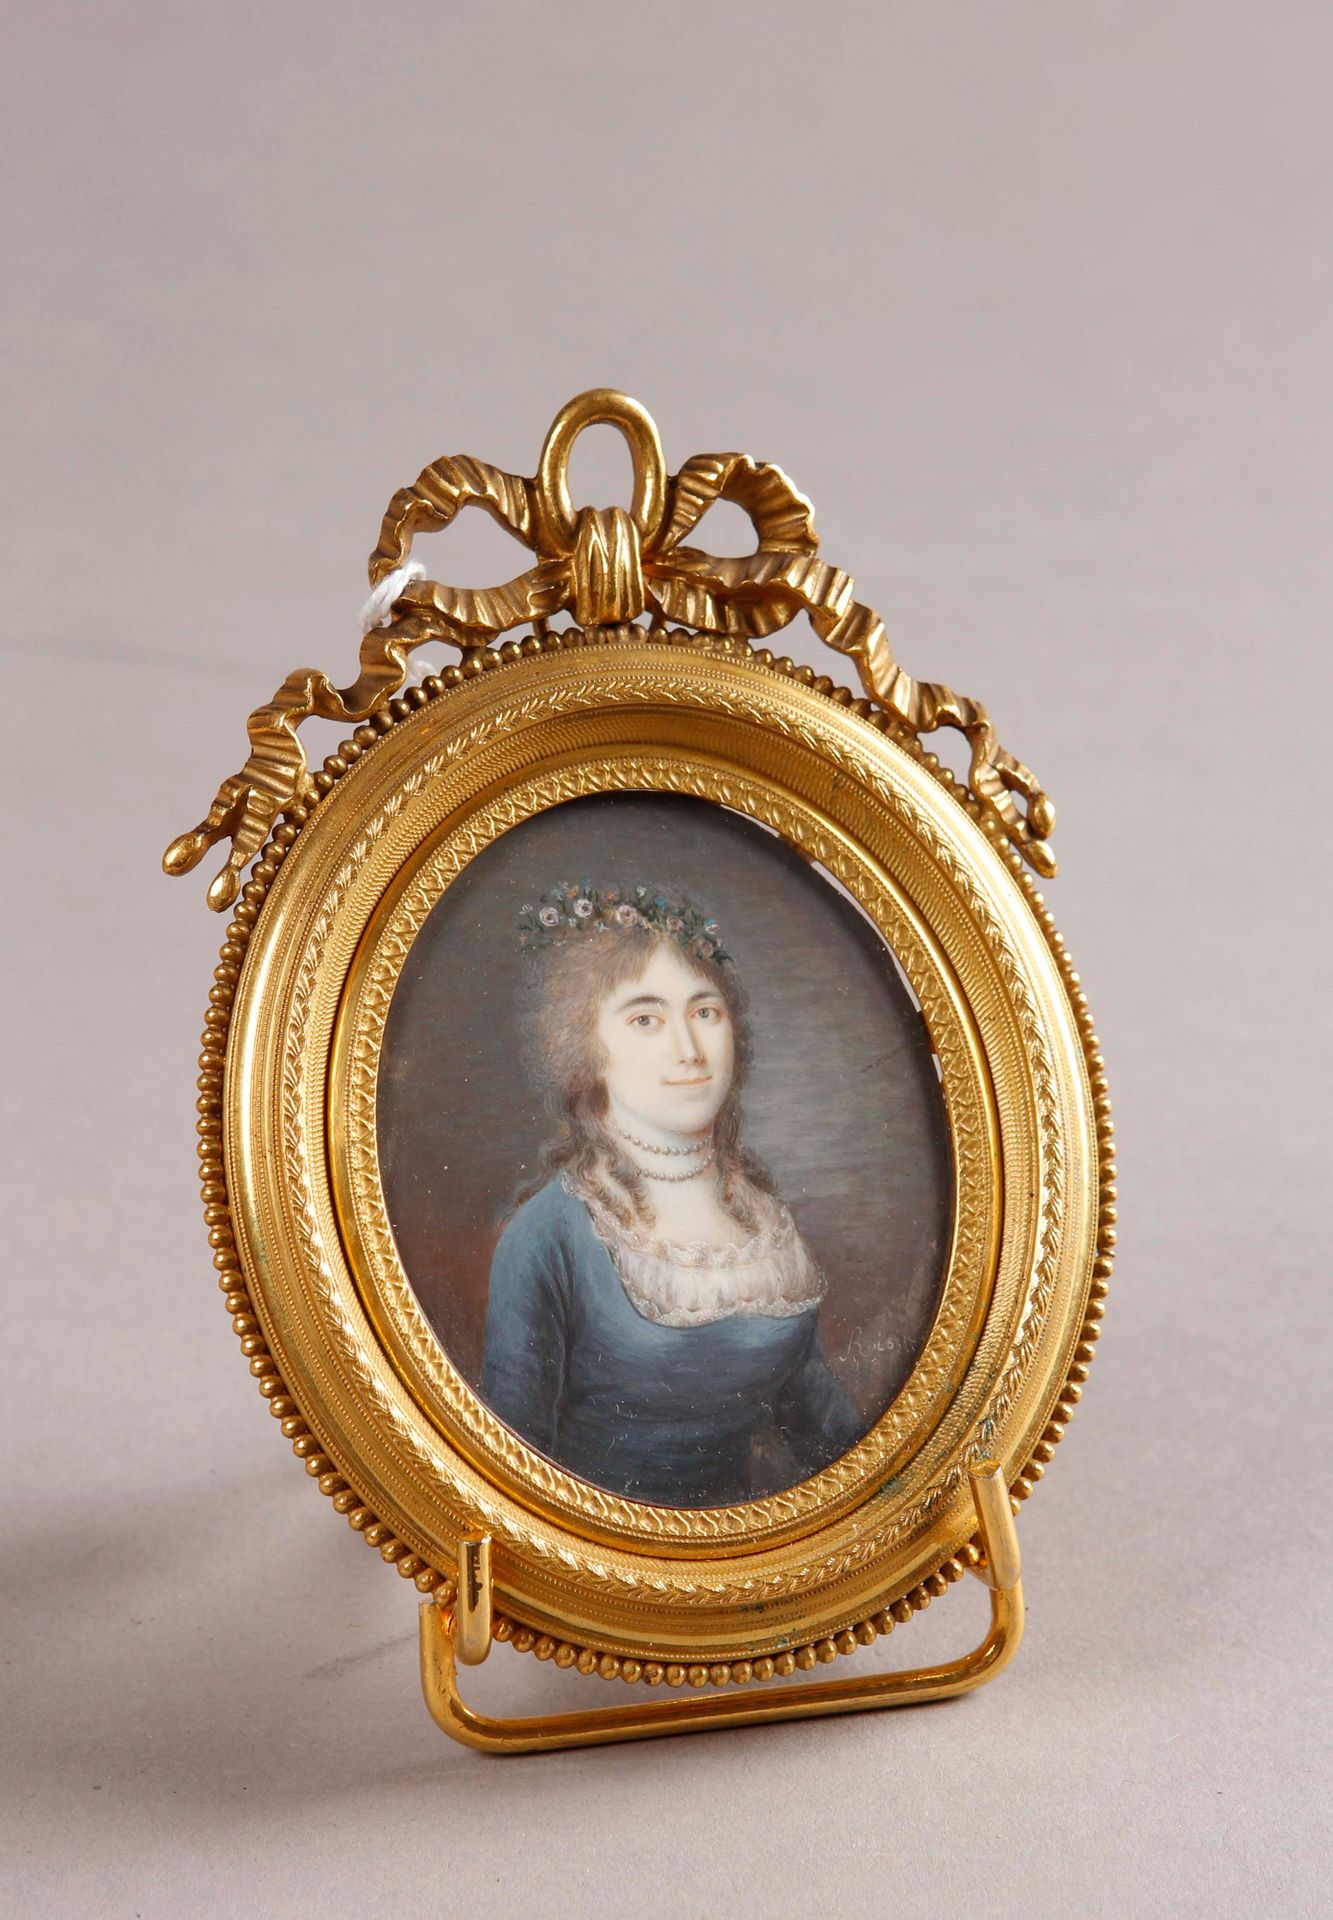 Null ROISIN（活跃于19世纪前四分之一）。

穿着蓝色连衣裙、戴着两串珍珠项链、戴着自然花冠的年轻女子的画像

象牙上的微型画，椭圆形，右下方有签名。&hellip;